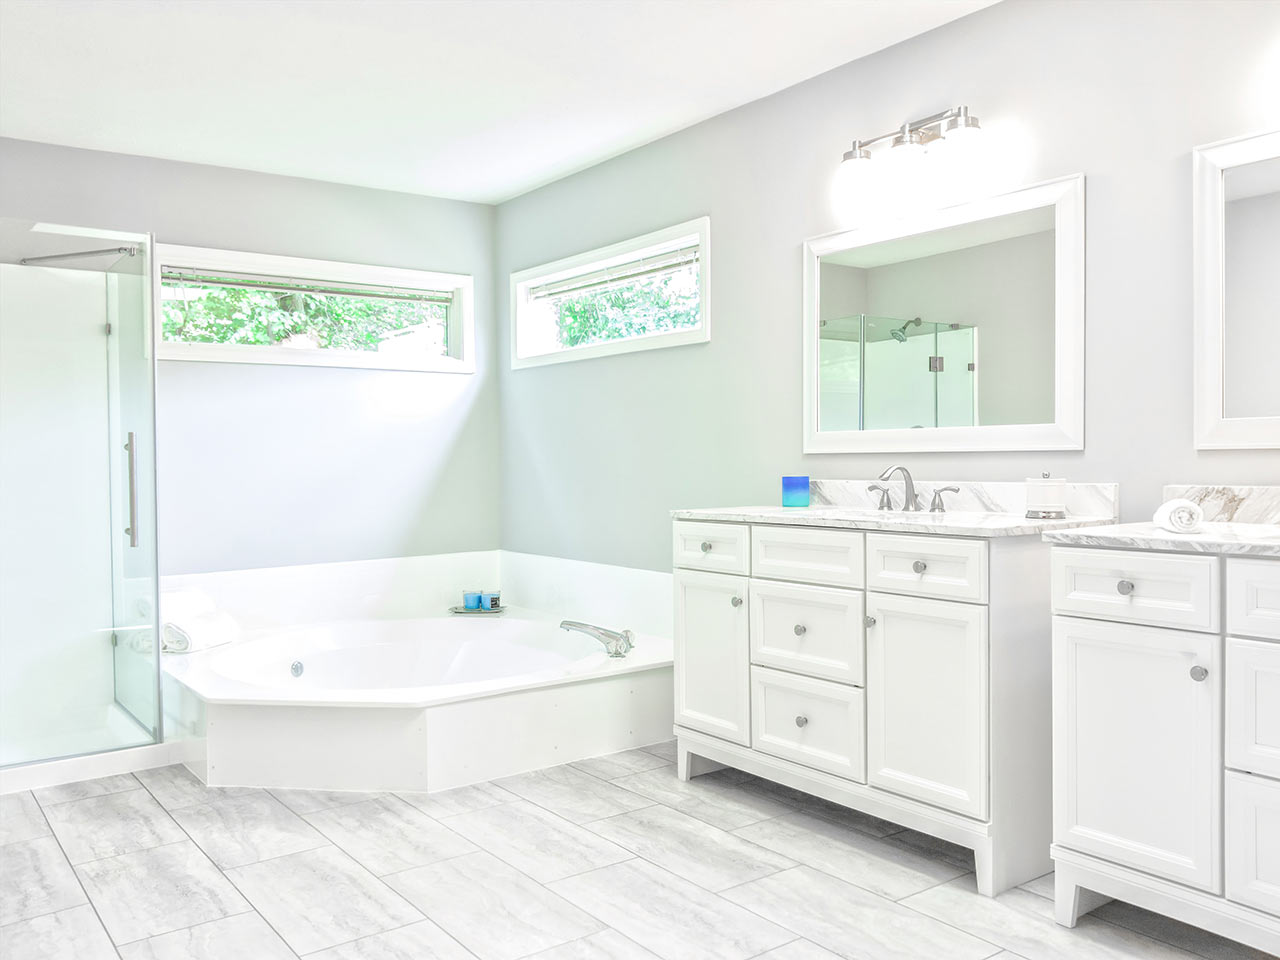 Prostorná a světlá bílá koupelna s rohovou vanou a vyvýšeným sprchovým koutem s prosklenými dveřmi